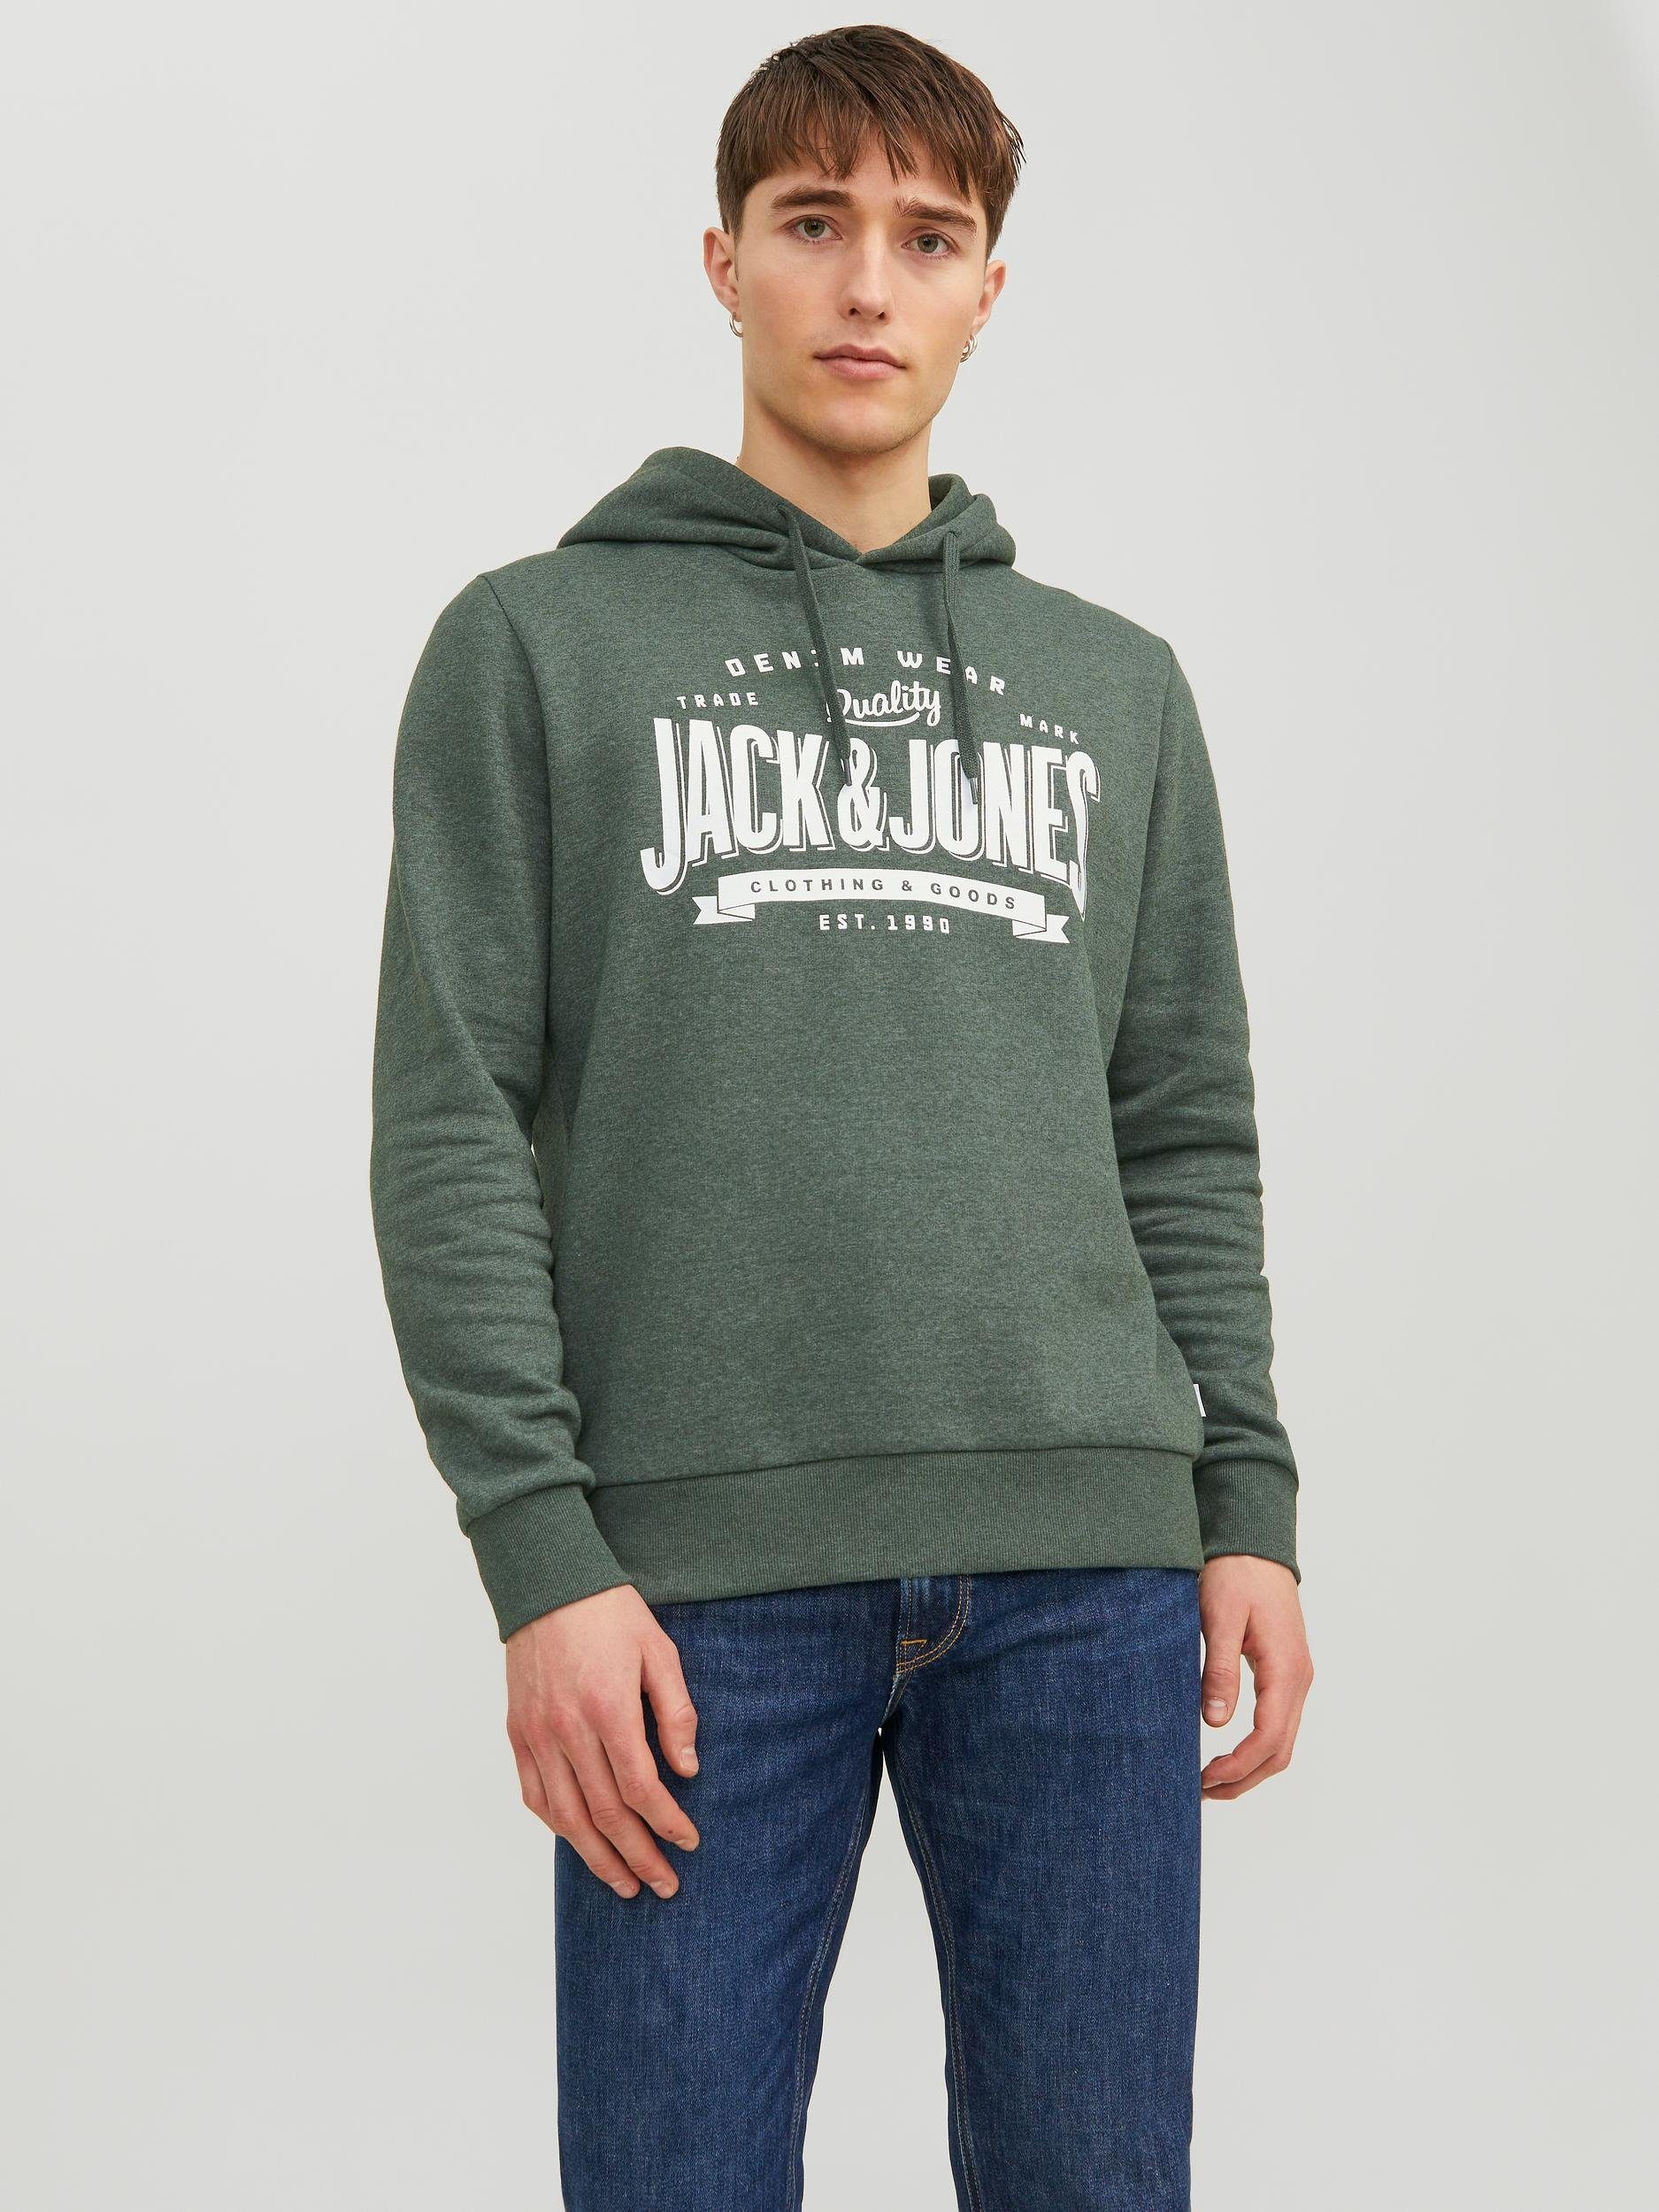 Jones & View/M Mountain Jack Sweatshirt